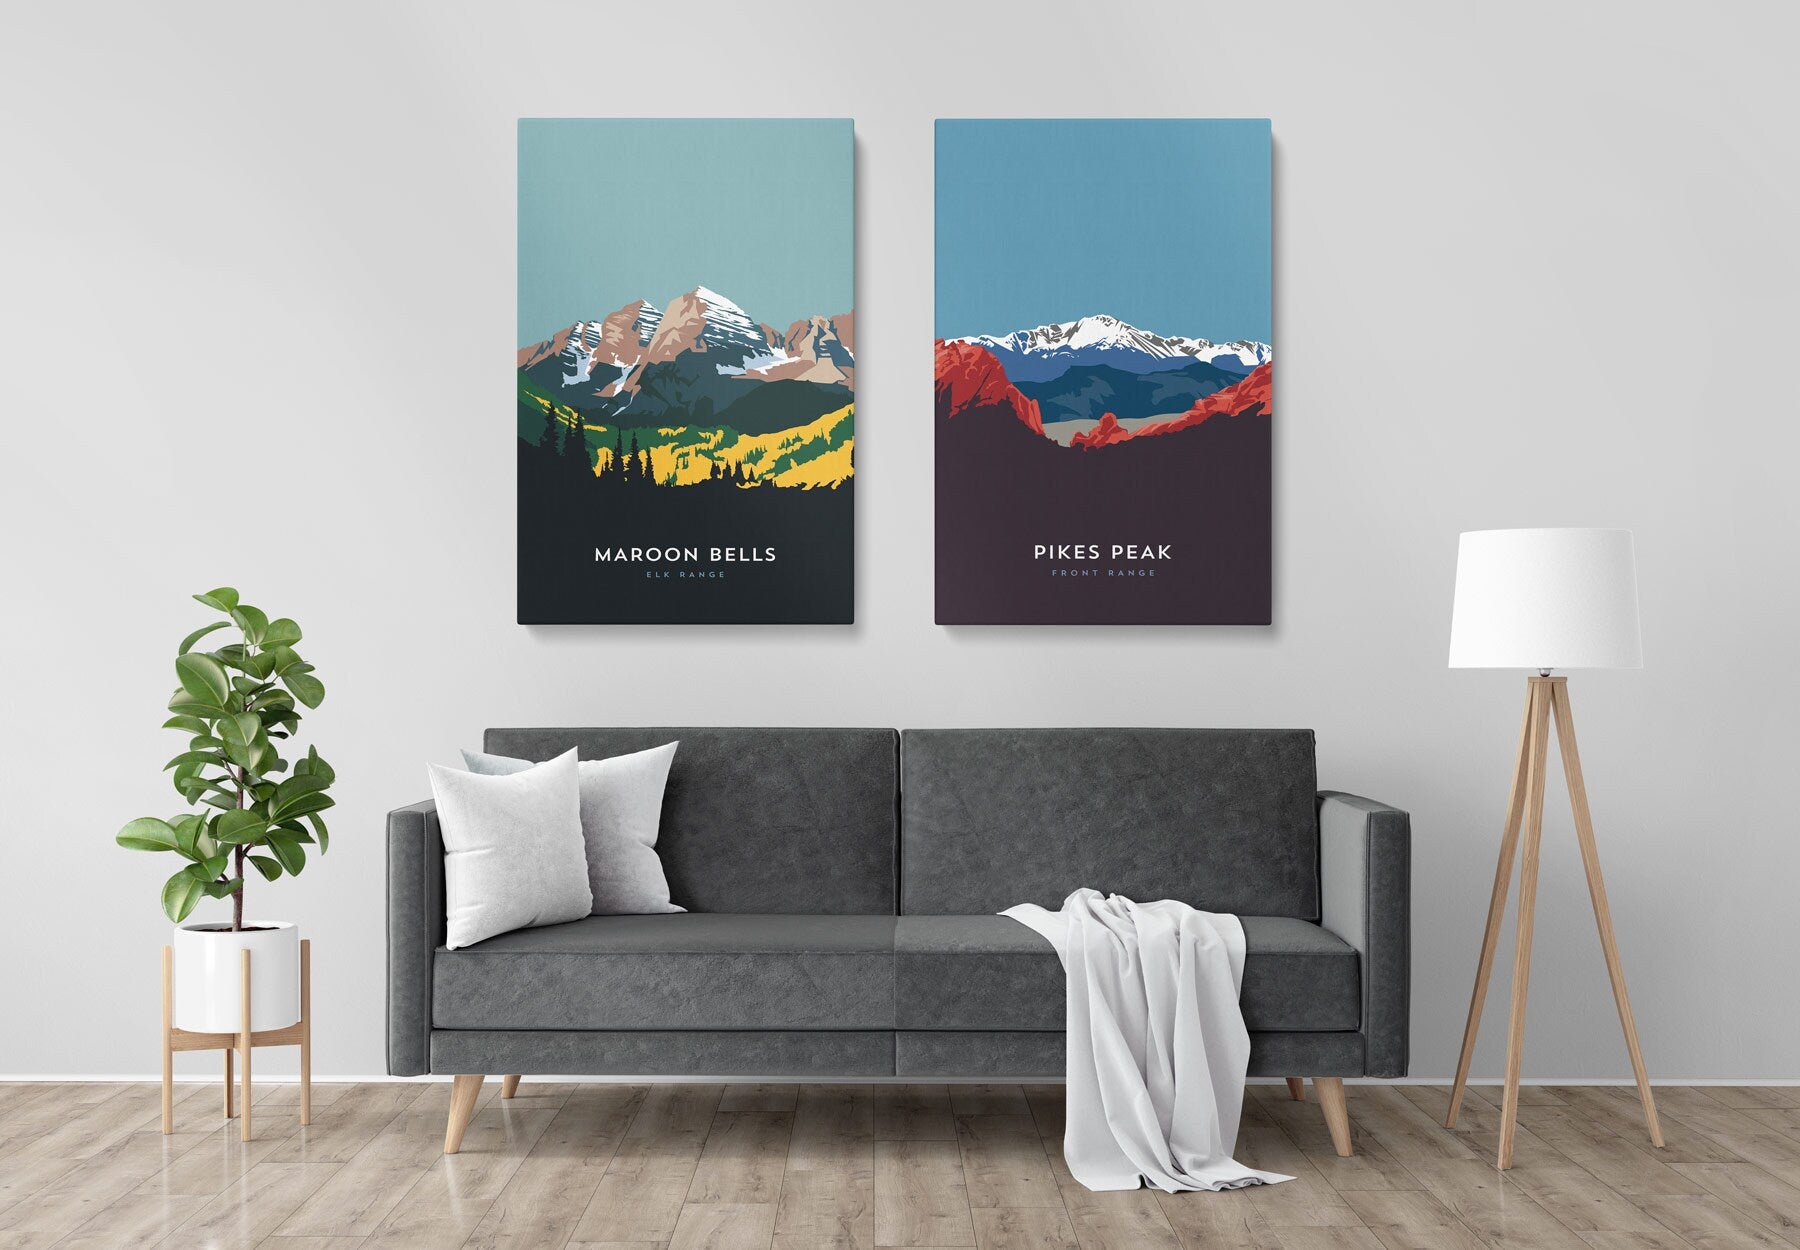 Mount Antero Colorado 14er Canvas Print